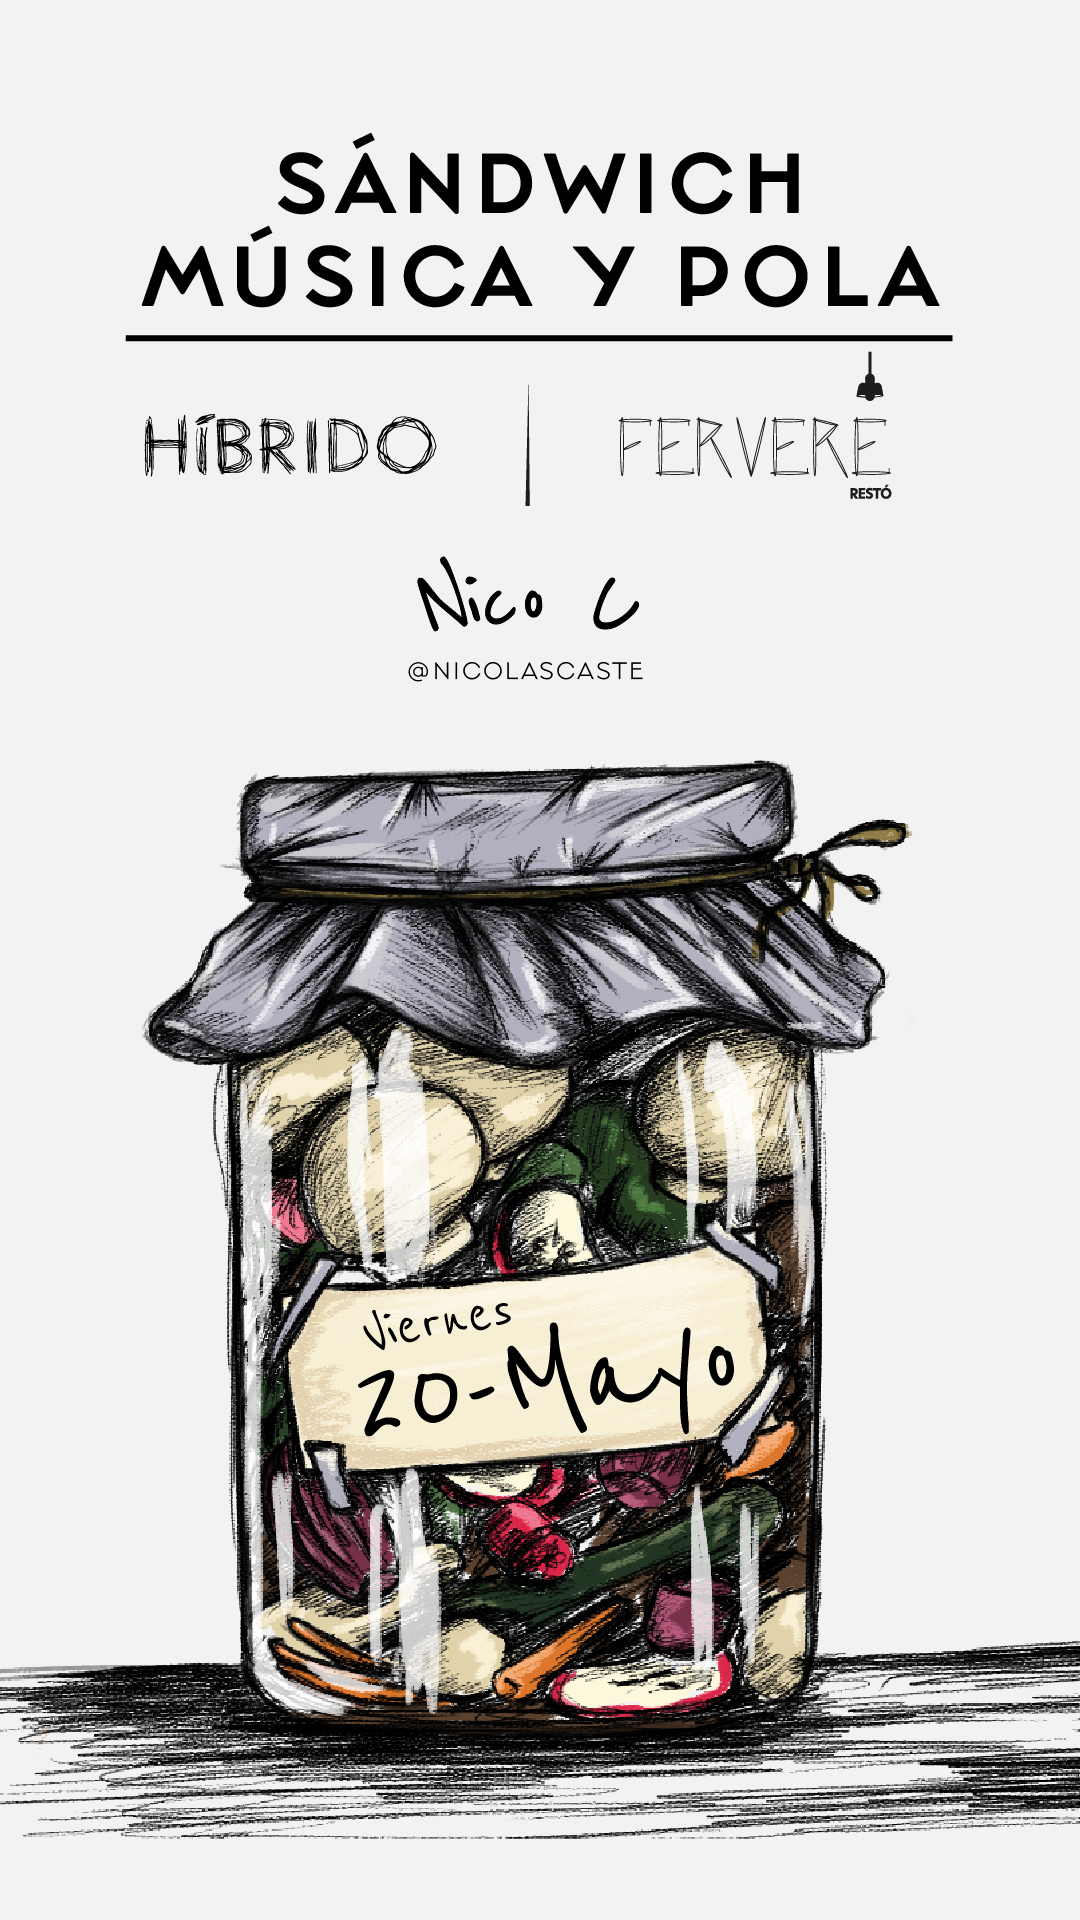 FERVERE & NICO C